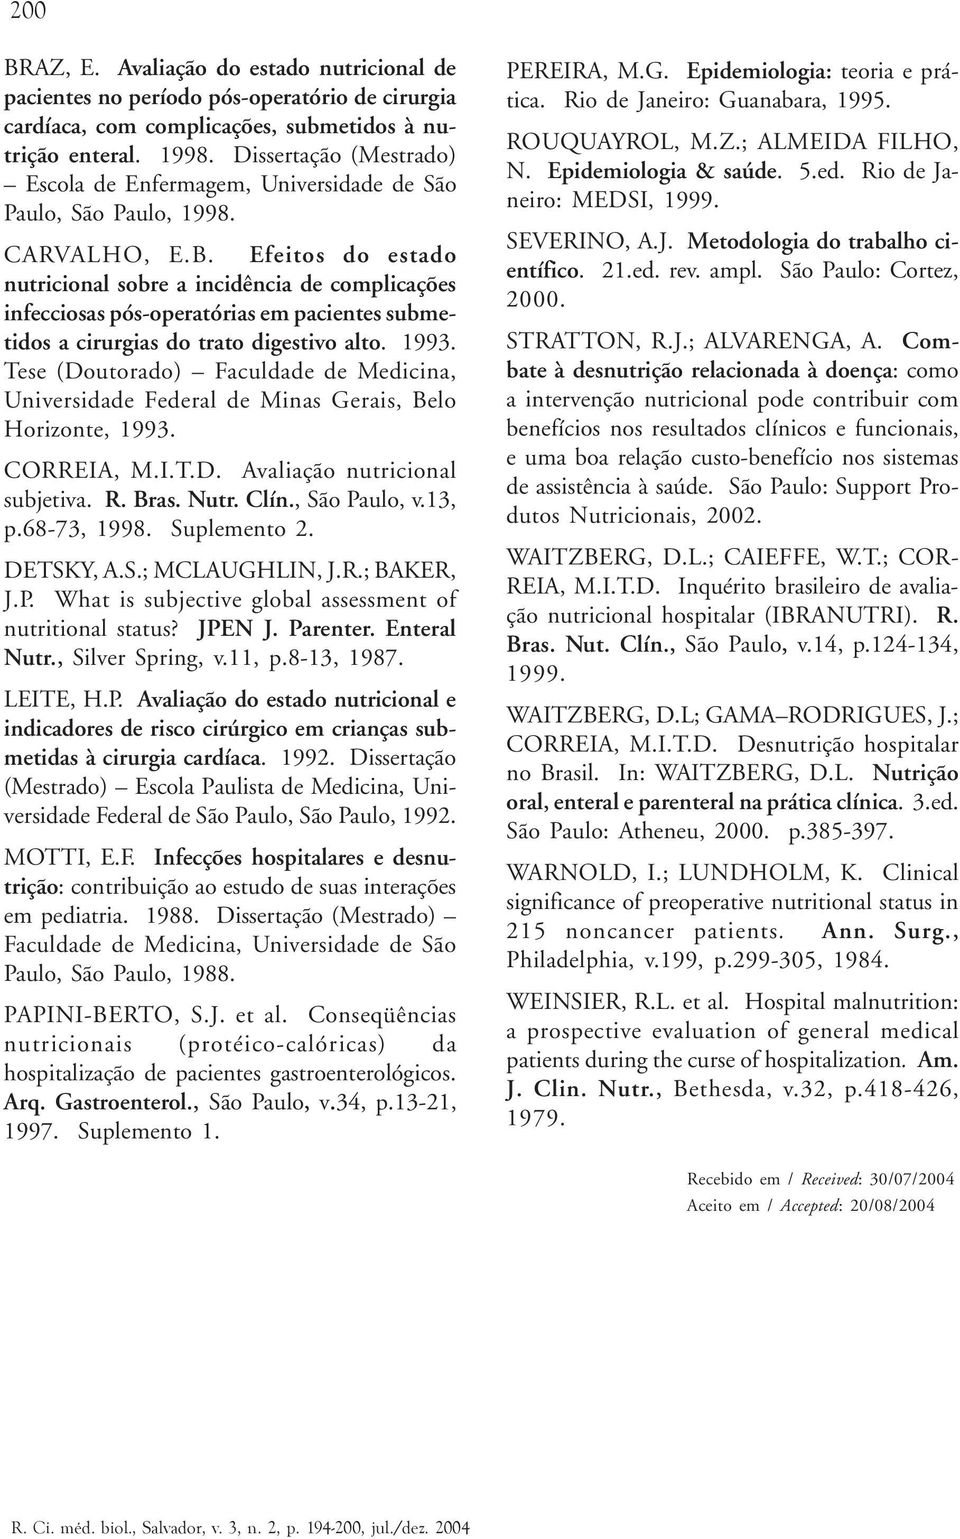 Efeitos do estado nutricional sobre a incidência de complicações infecciosas pós-operatórias em pacientes submetidos a cirurgias do trato digestivo alto. 1993.